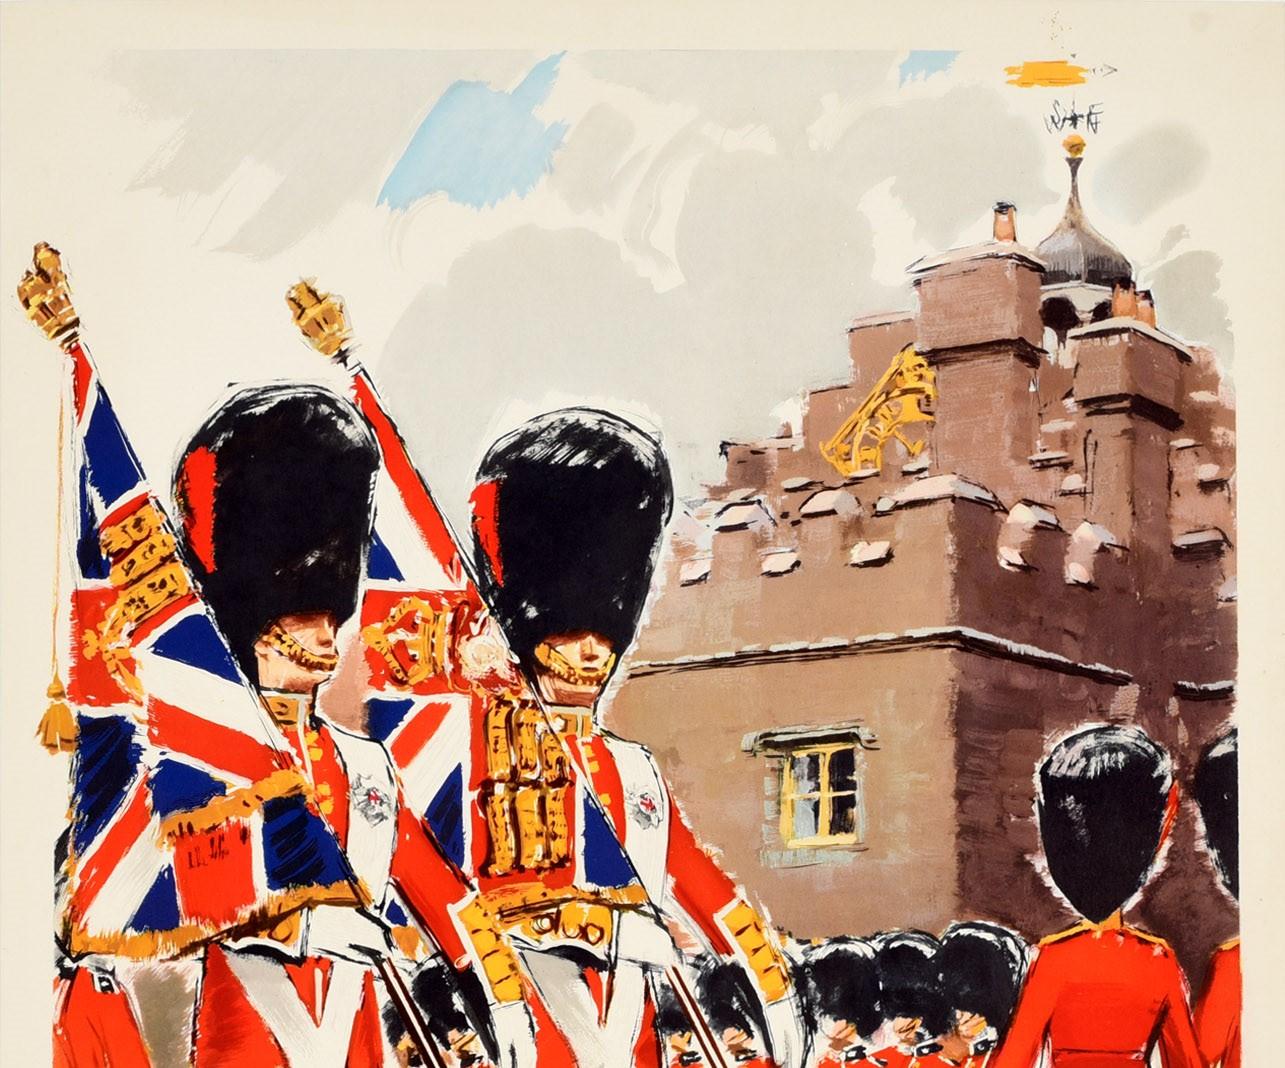 Affiche de voyage vintage originale faisant la promotion de la Grande-Bretagne en tant que destination touristique - Ceremonial in Britain - publiée par la British Travel And Holidays Association. Elle présente une illustration colorée des Royal